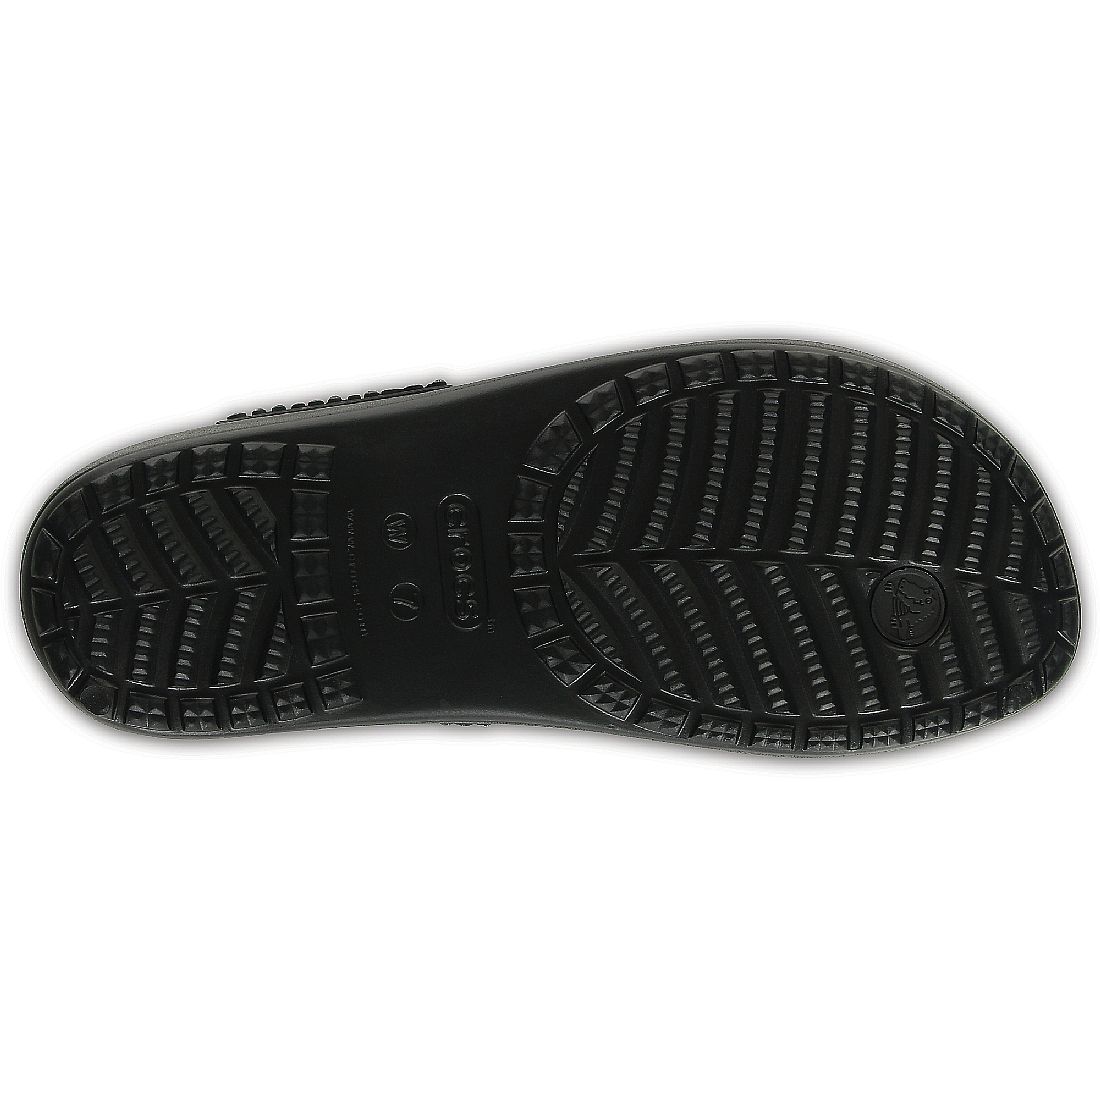 Crocs Sloane Embellosched Flip Sandale Badelatsche 204181